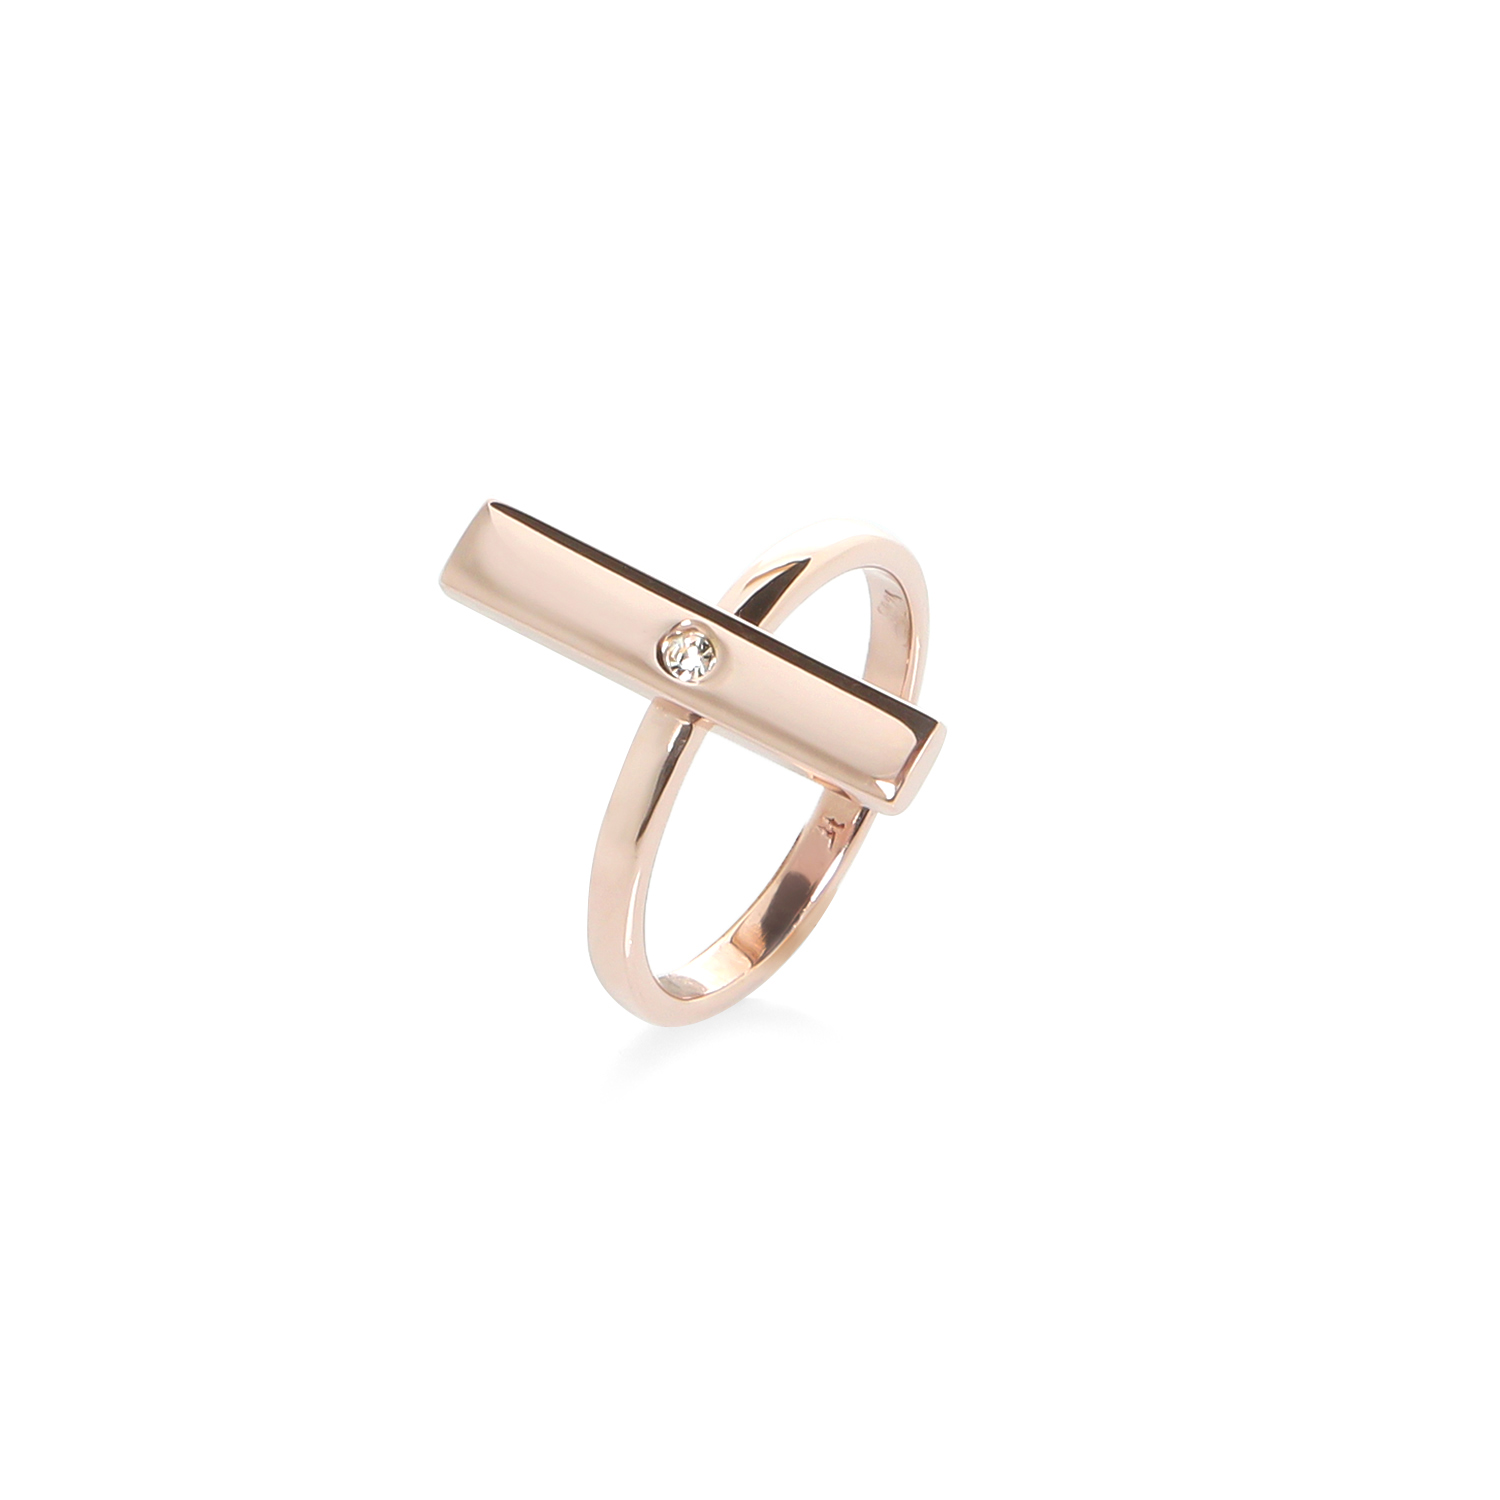 Γυναικεία/Αξεσουάρ/Κοσμήματα/Δαχτυλίδια FOLLI FOLLIE - Γυναικείο ασημένιο δαχτυλίδι FOLLI FOLLIE PLATE ροζ χρυσό